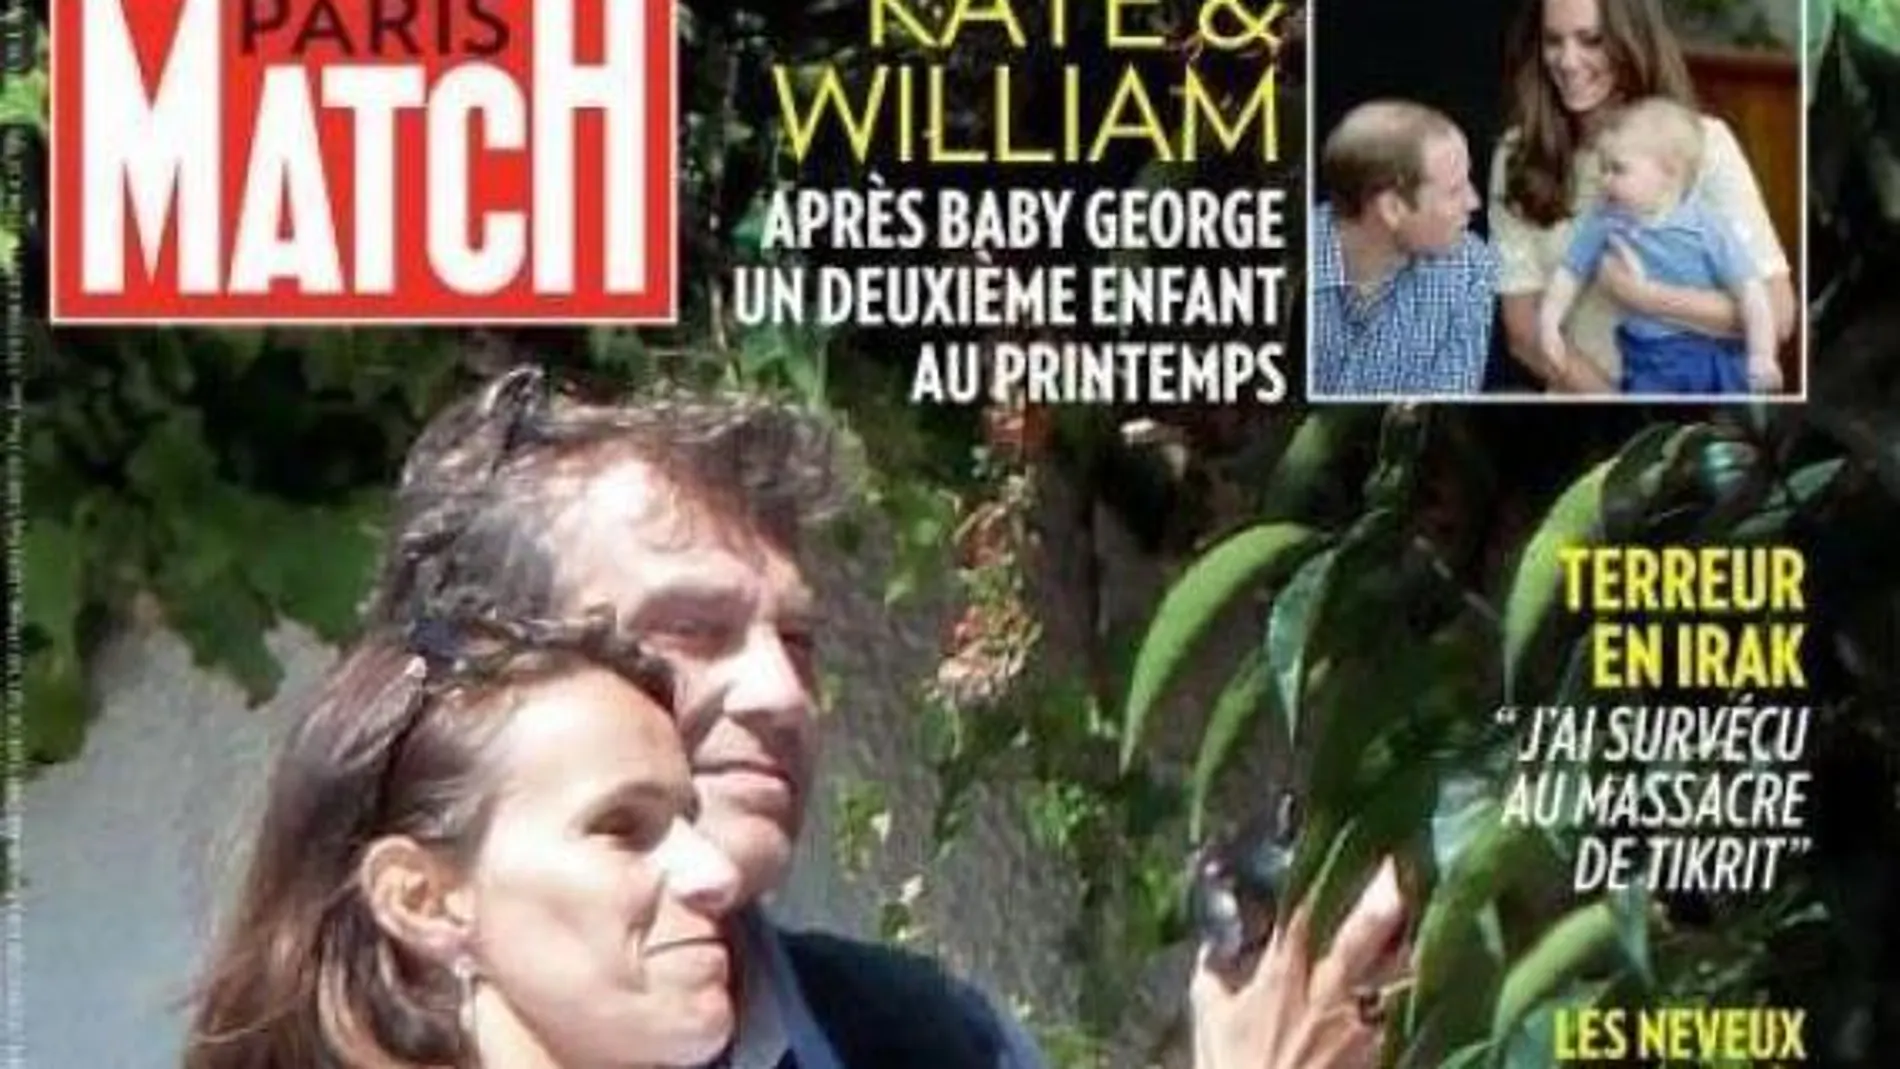 Paris Match desvela el supuesto romance entre dos exministros de Hollande